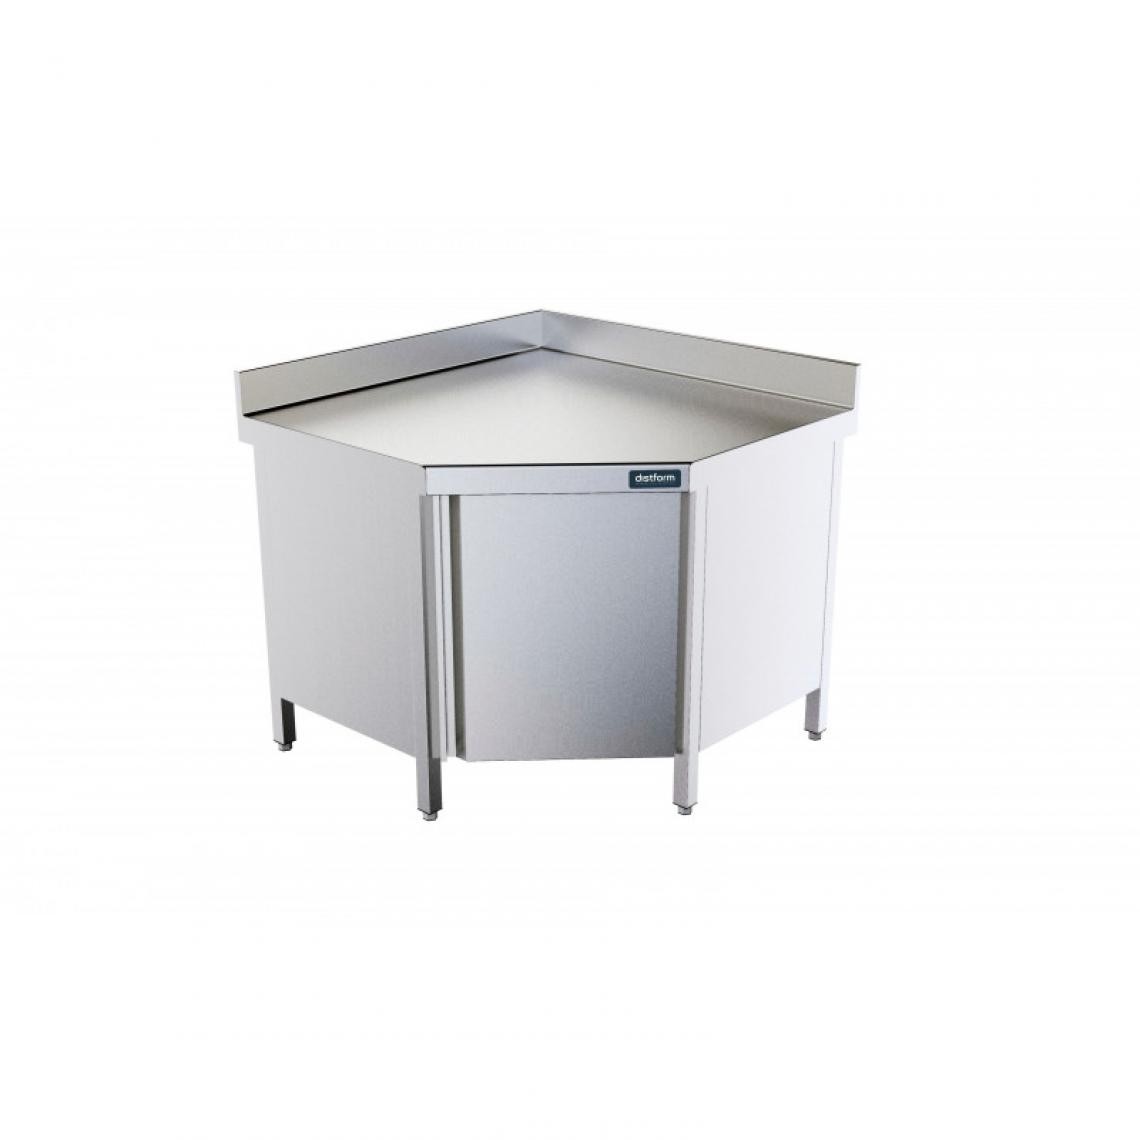 DISTFORM - Table d'Angle 1000x1000mm avec Porte et Dosseret - Distform - Acier inoxydable1000x1000x700 - Tables à manger